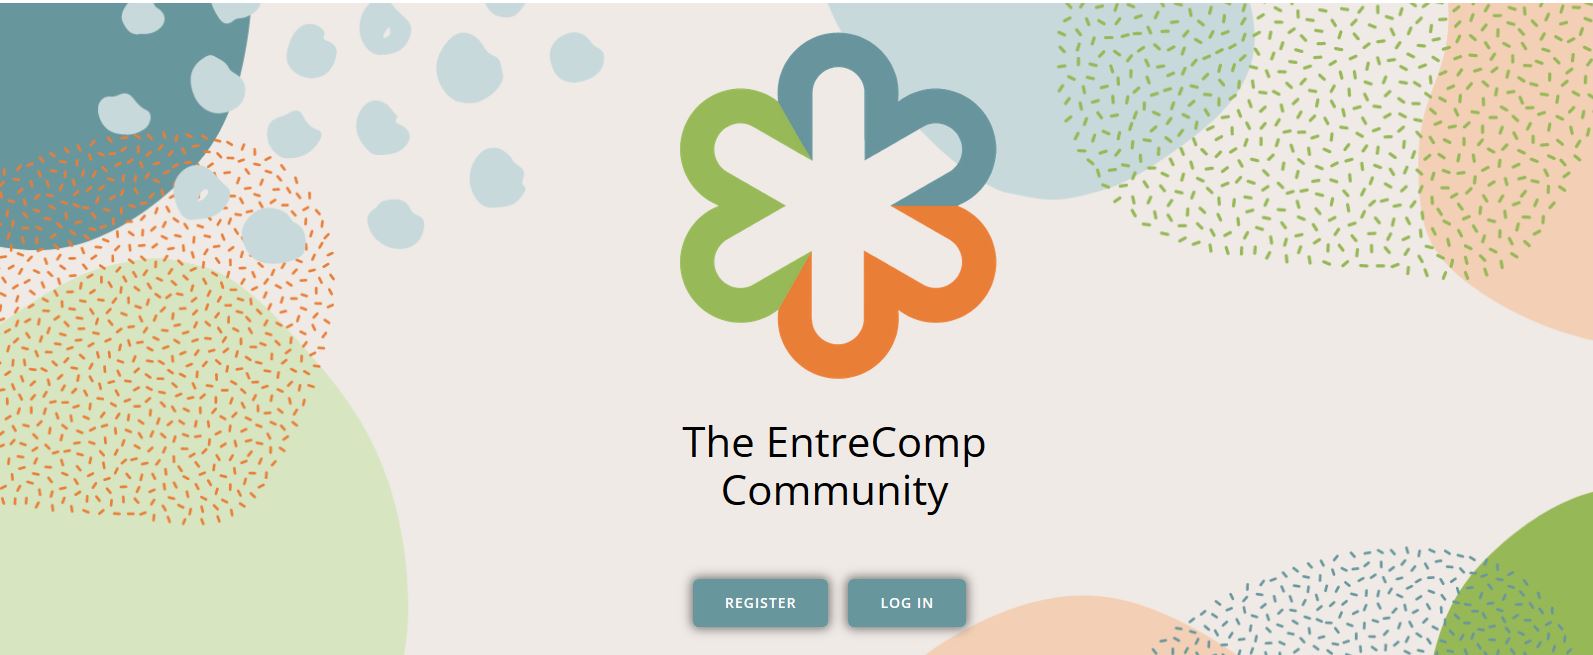 Toutes les ressources EntreComp sur une seule plateforme!